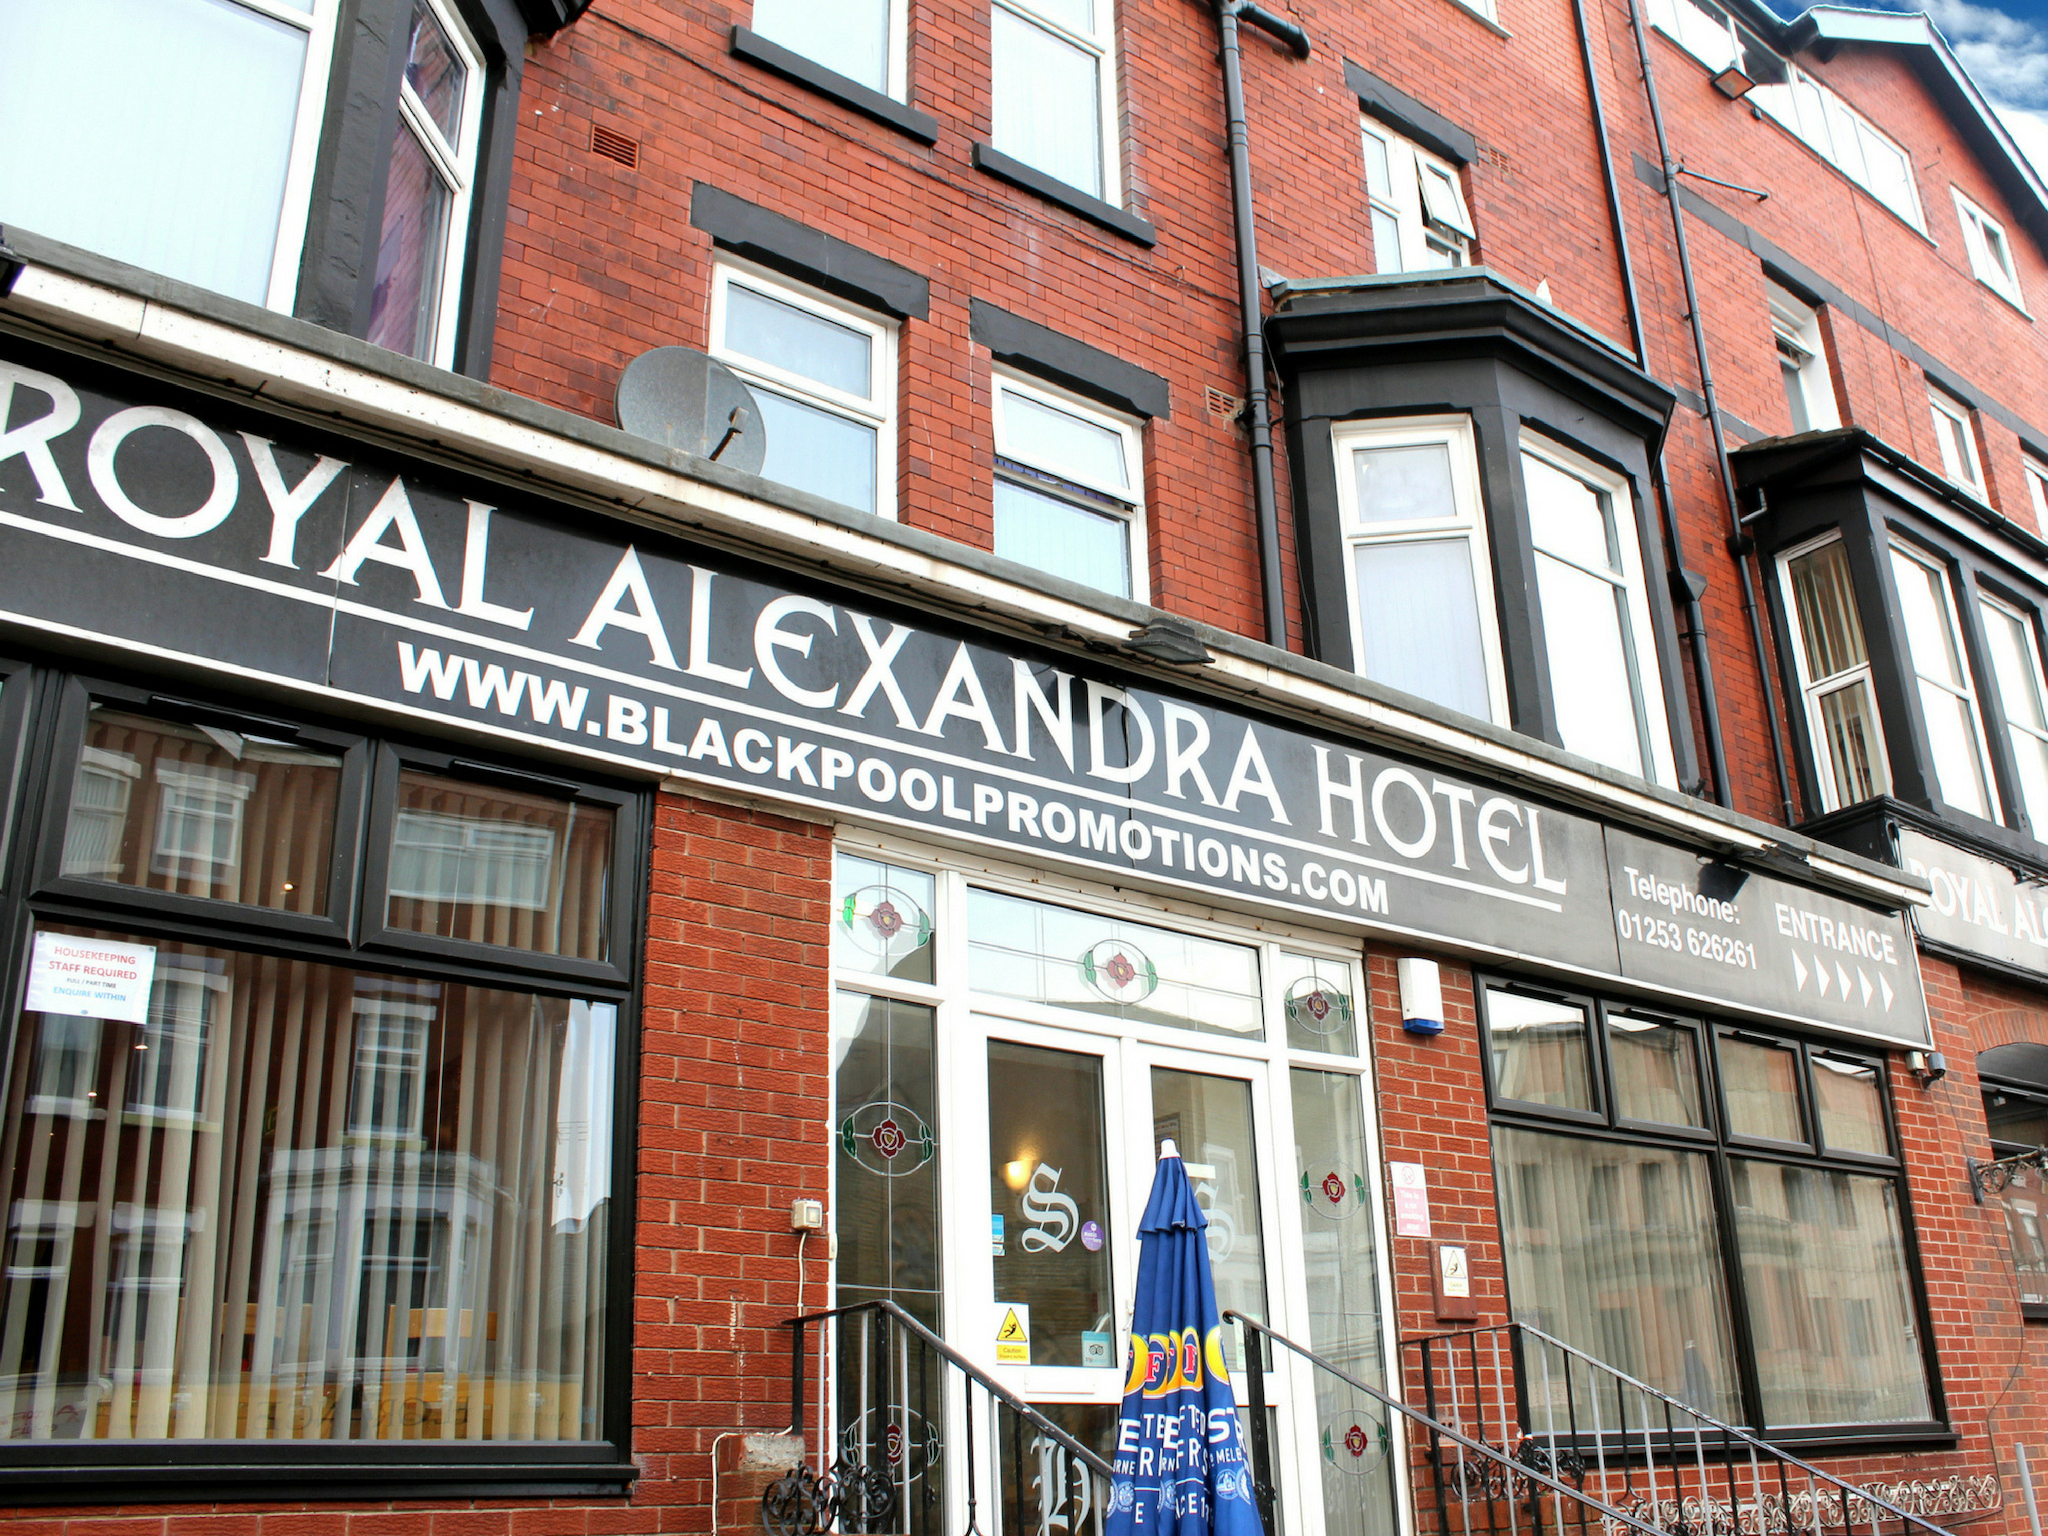 The Royal Alexandra Hotel1